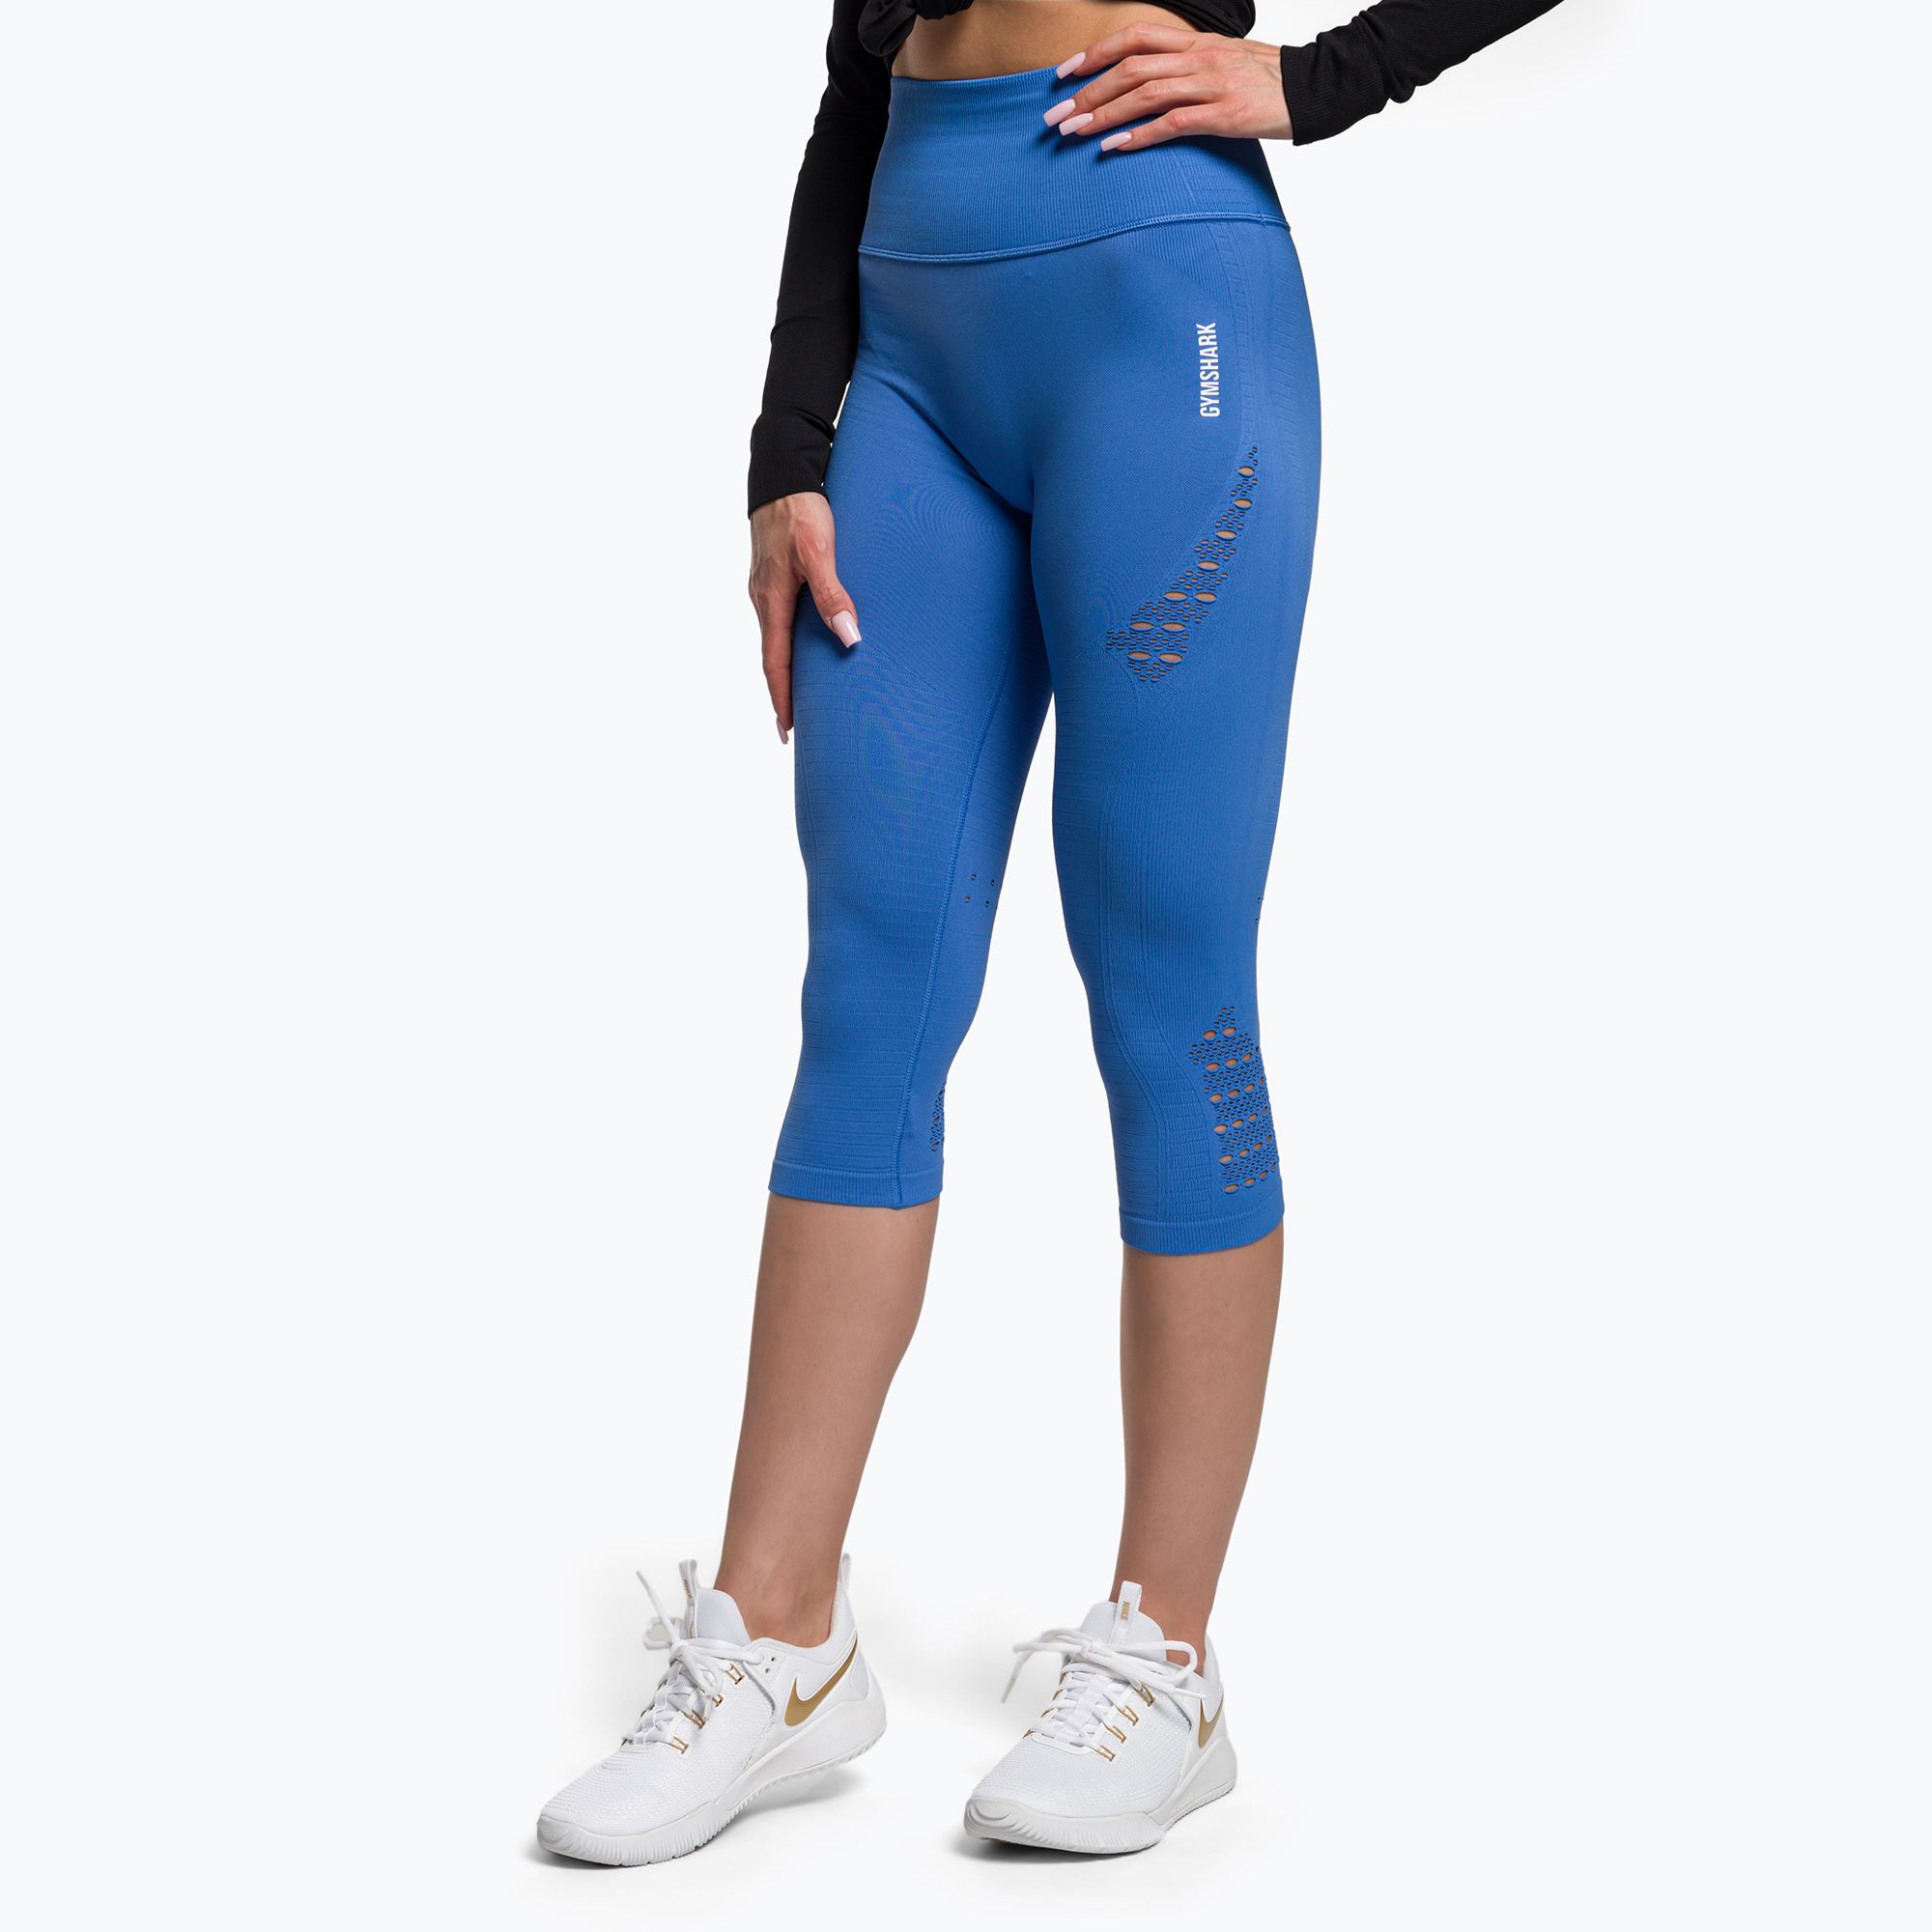 https://sportano.com/img/986c30c27a3d26a3ee16c136f92f4ff5/5/0/5057913377465_1-jpg/women-s-training-leggings-gymshark-energy-seamless-crop-blue-0.jpg